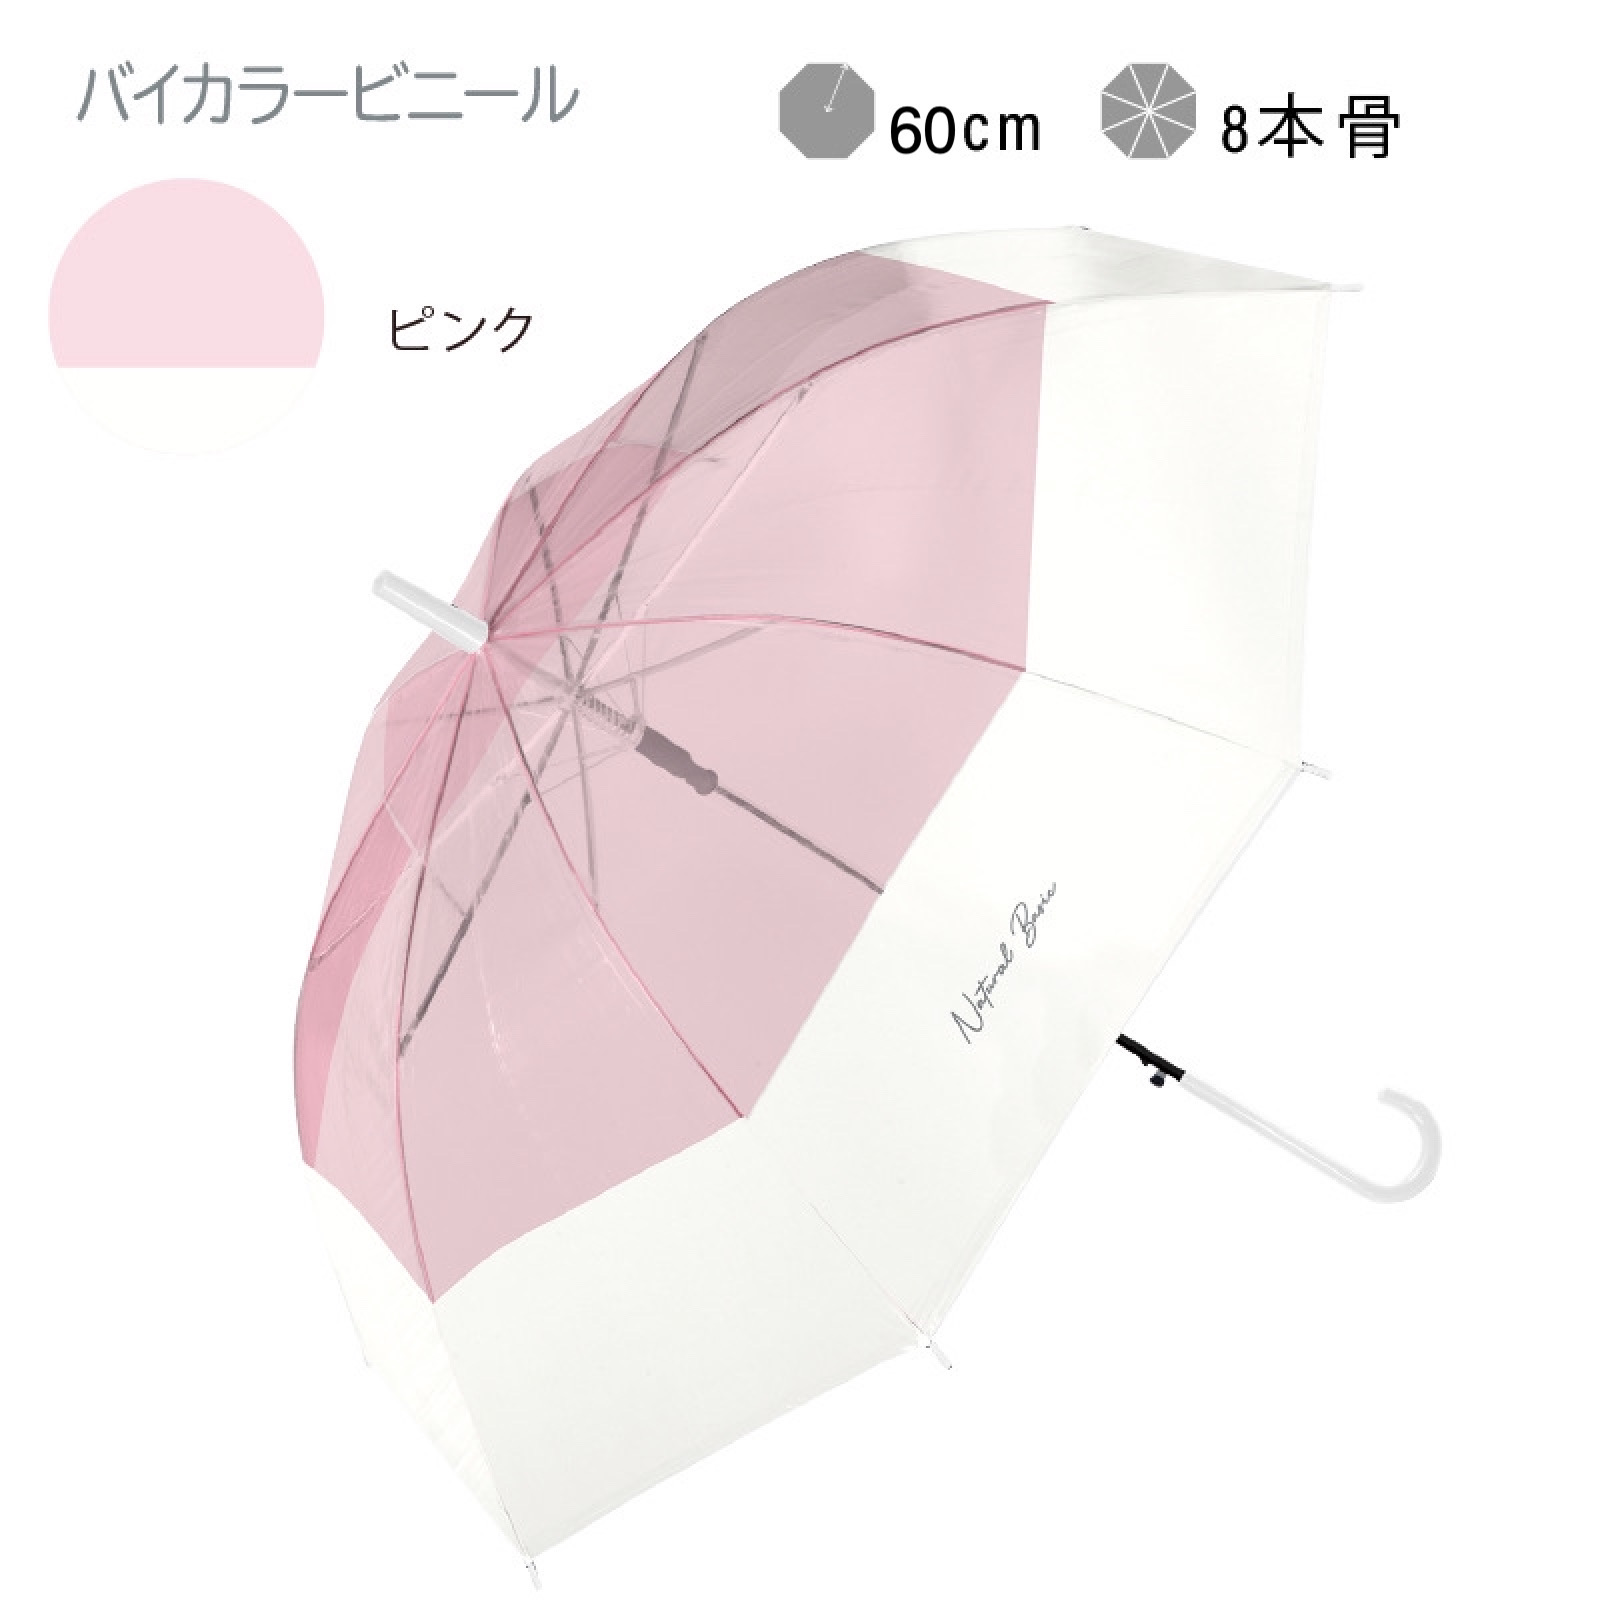 送料無料 》 雨傘 長傘 大きめ メンズ レディース 人気 安い 軽量 ビニール傘 オシャレ おしゃれ かわいい 可愛い シンプル ジャンプ 傘  プレゼント 耐風 傘